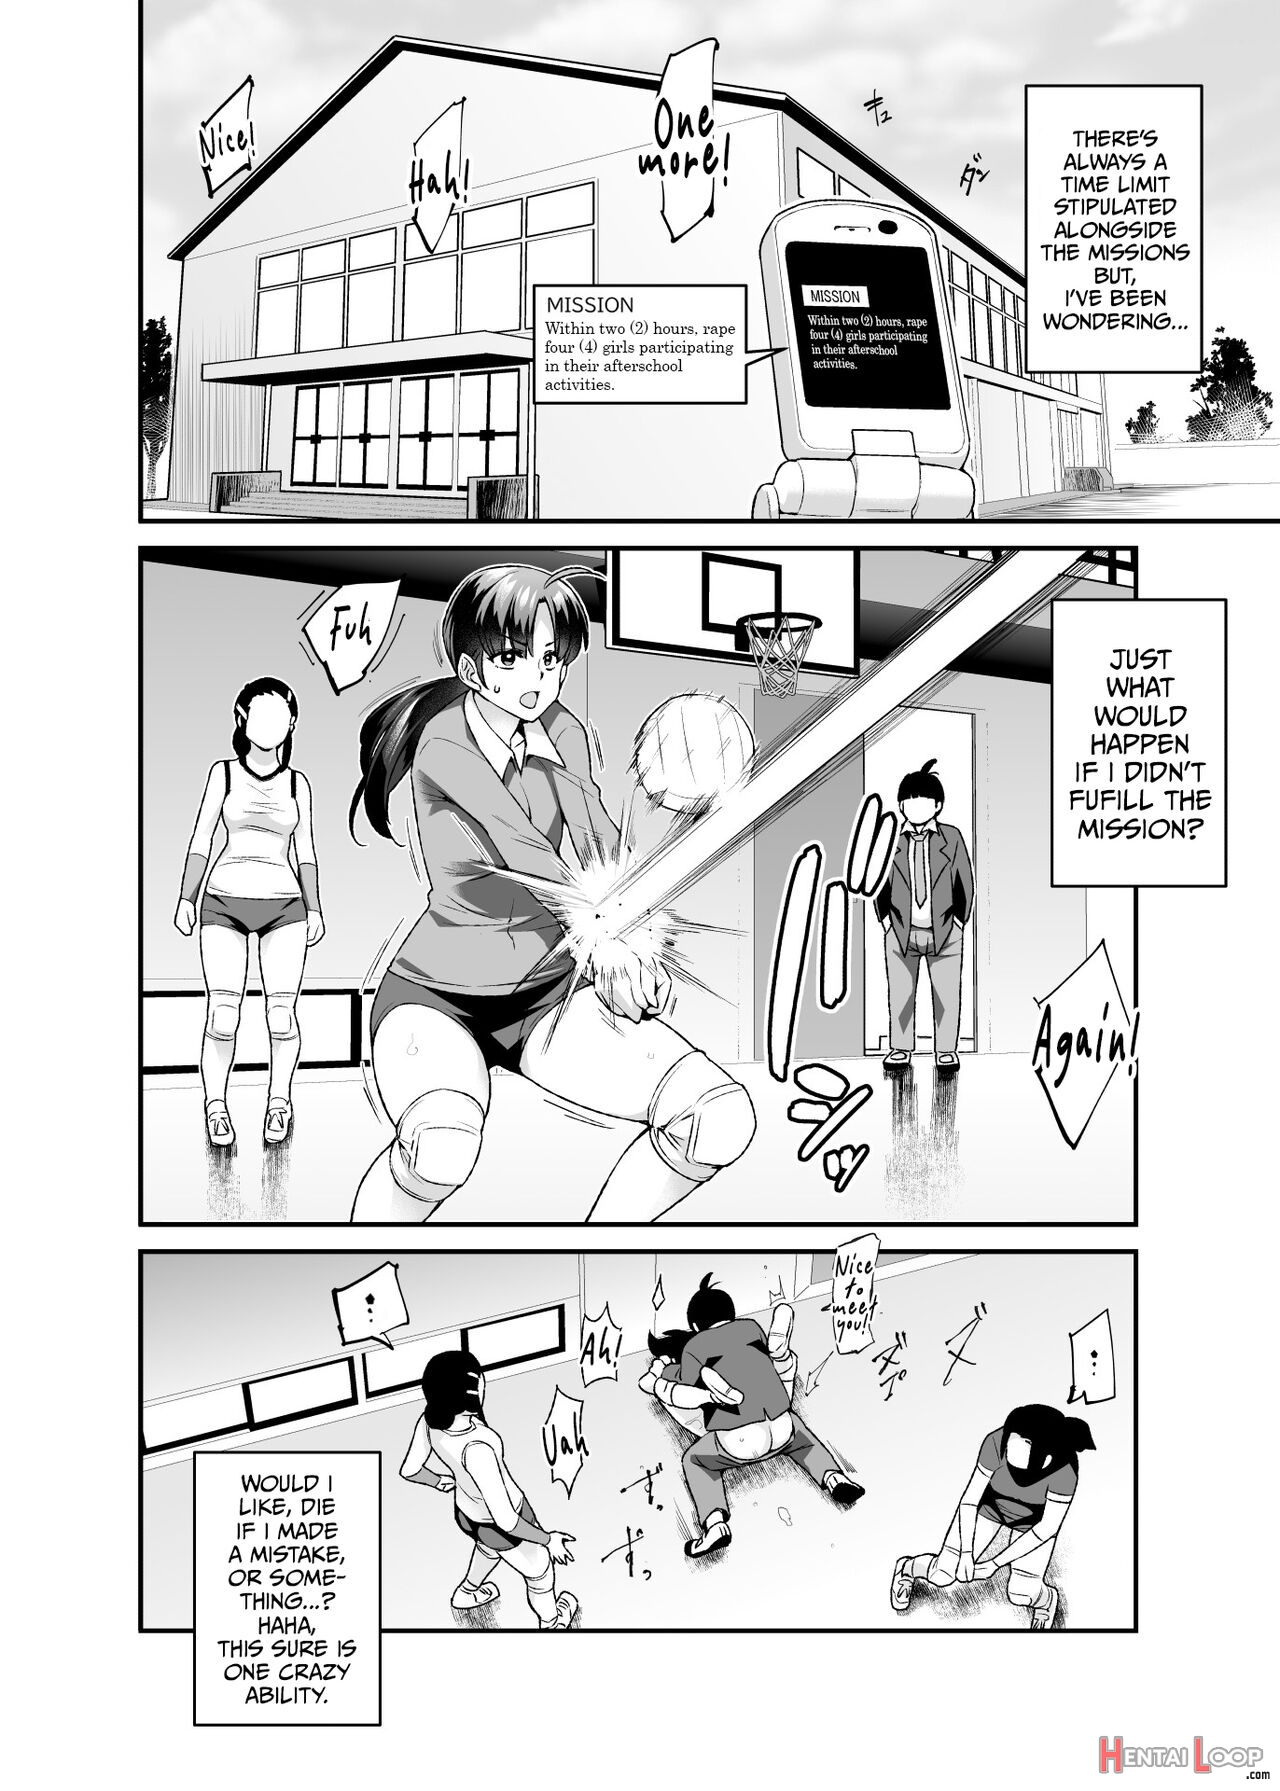 Super Cheat Mission Ex Sono Garake Ni Hyouji Sareta Mission Wa Kanarazu Tassei Dekiru page 37